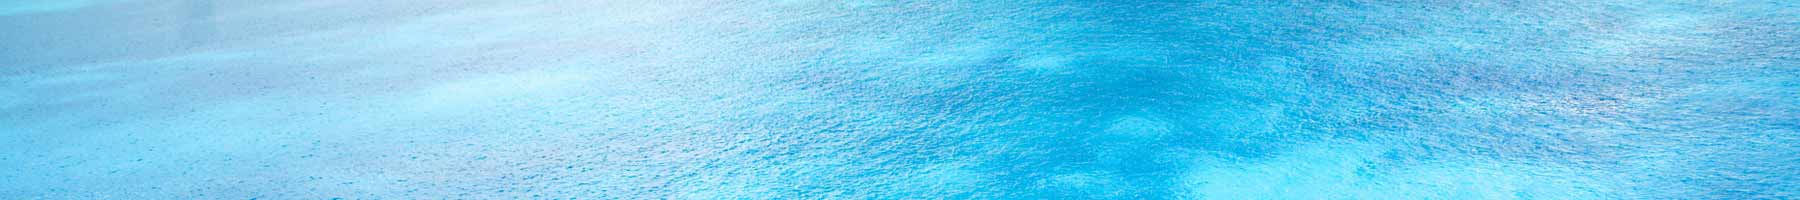 aqua blue background texture